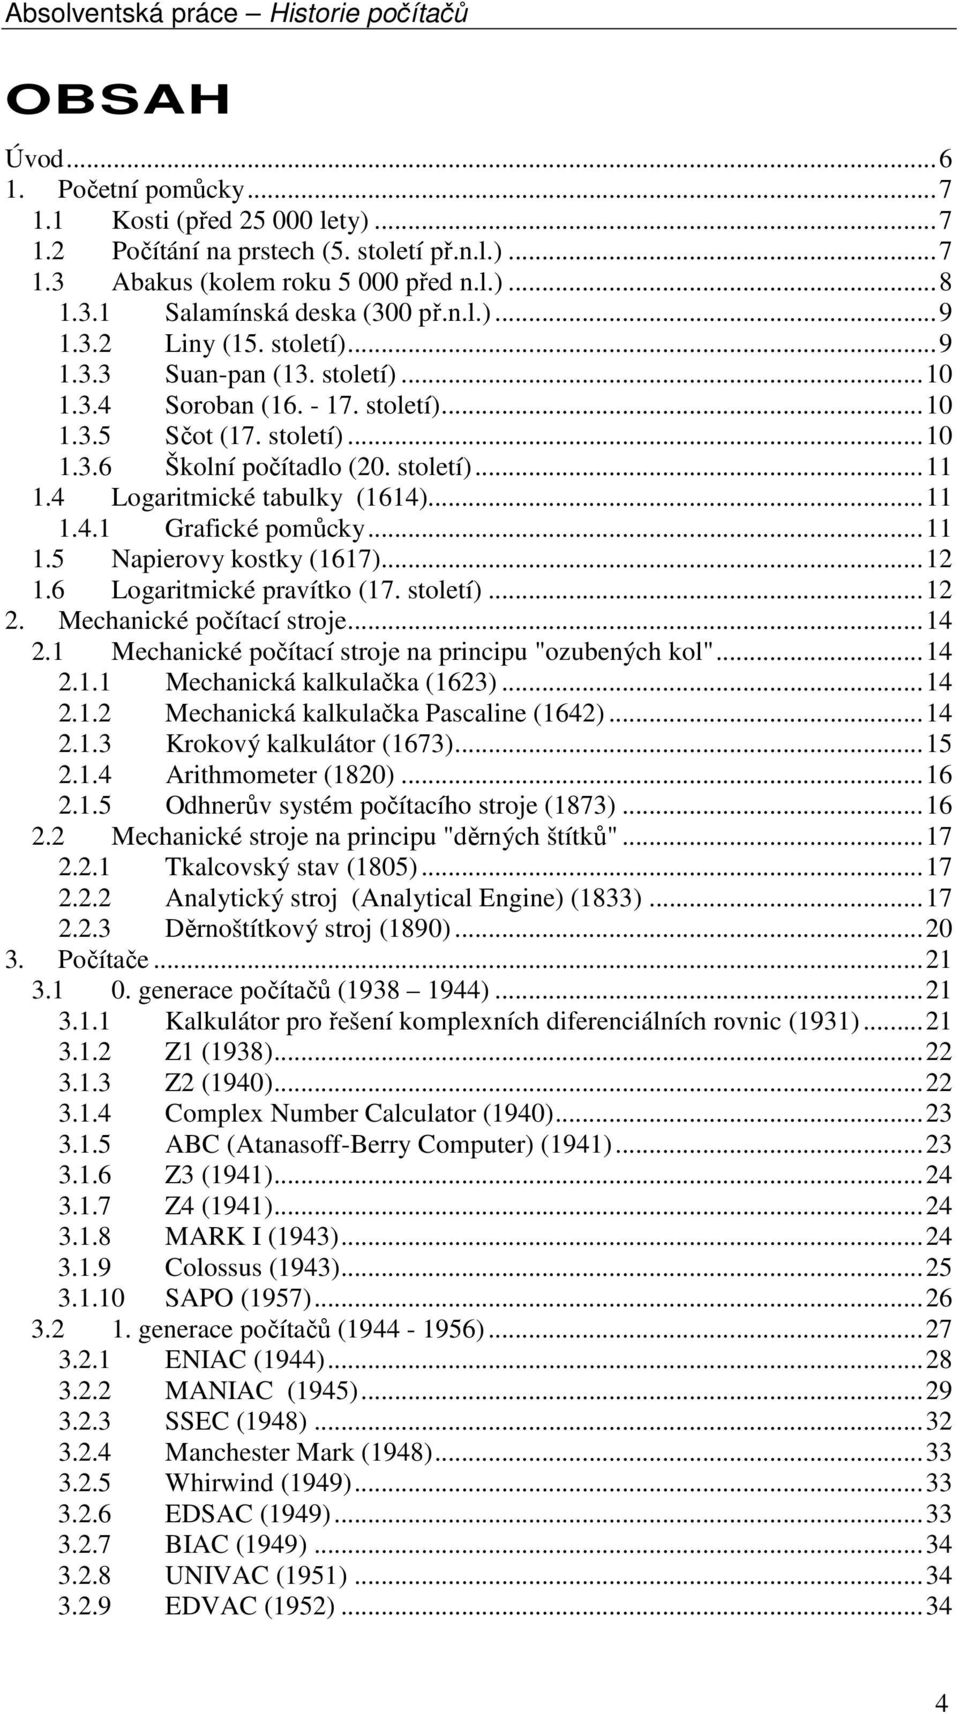 4 Logaritmické tabulky (1614)...11 1.4.1 Grafické pomůcky...11 1.5 Napierovy kostky (1617)...12 1.6 Logaritmické pravítko (17. století)...12 2. Mechanické počítací stroje...14 2.